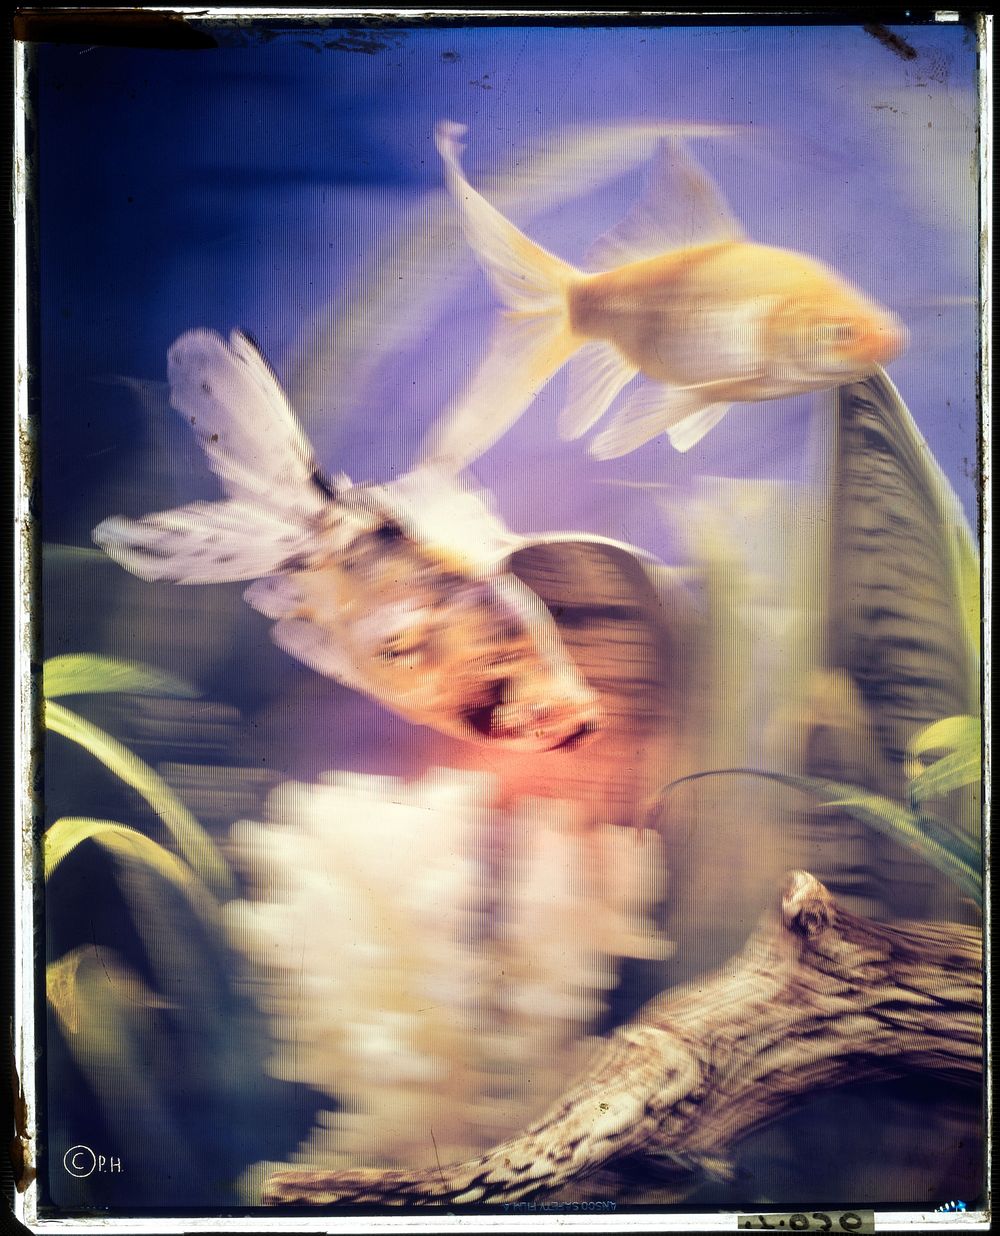 Aquarium met vissen (1970 - 1984) by anonymous